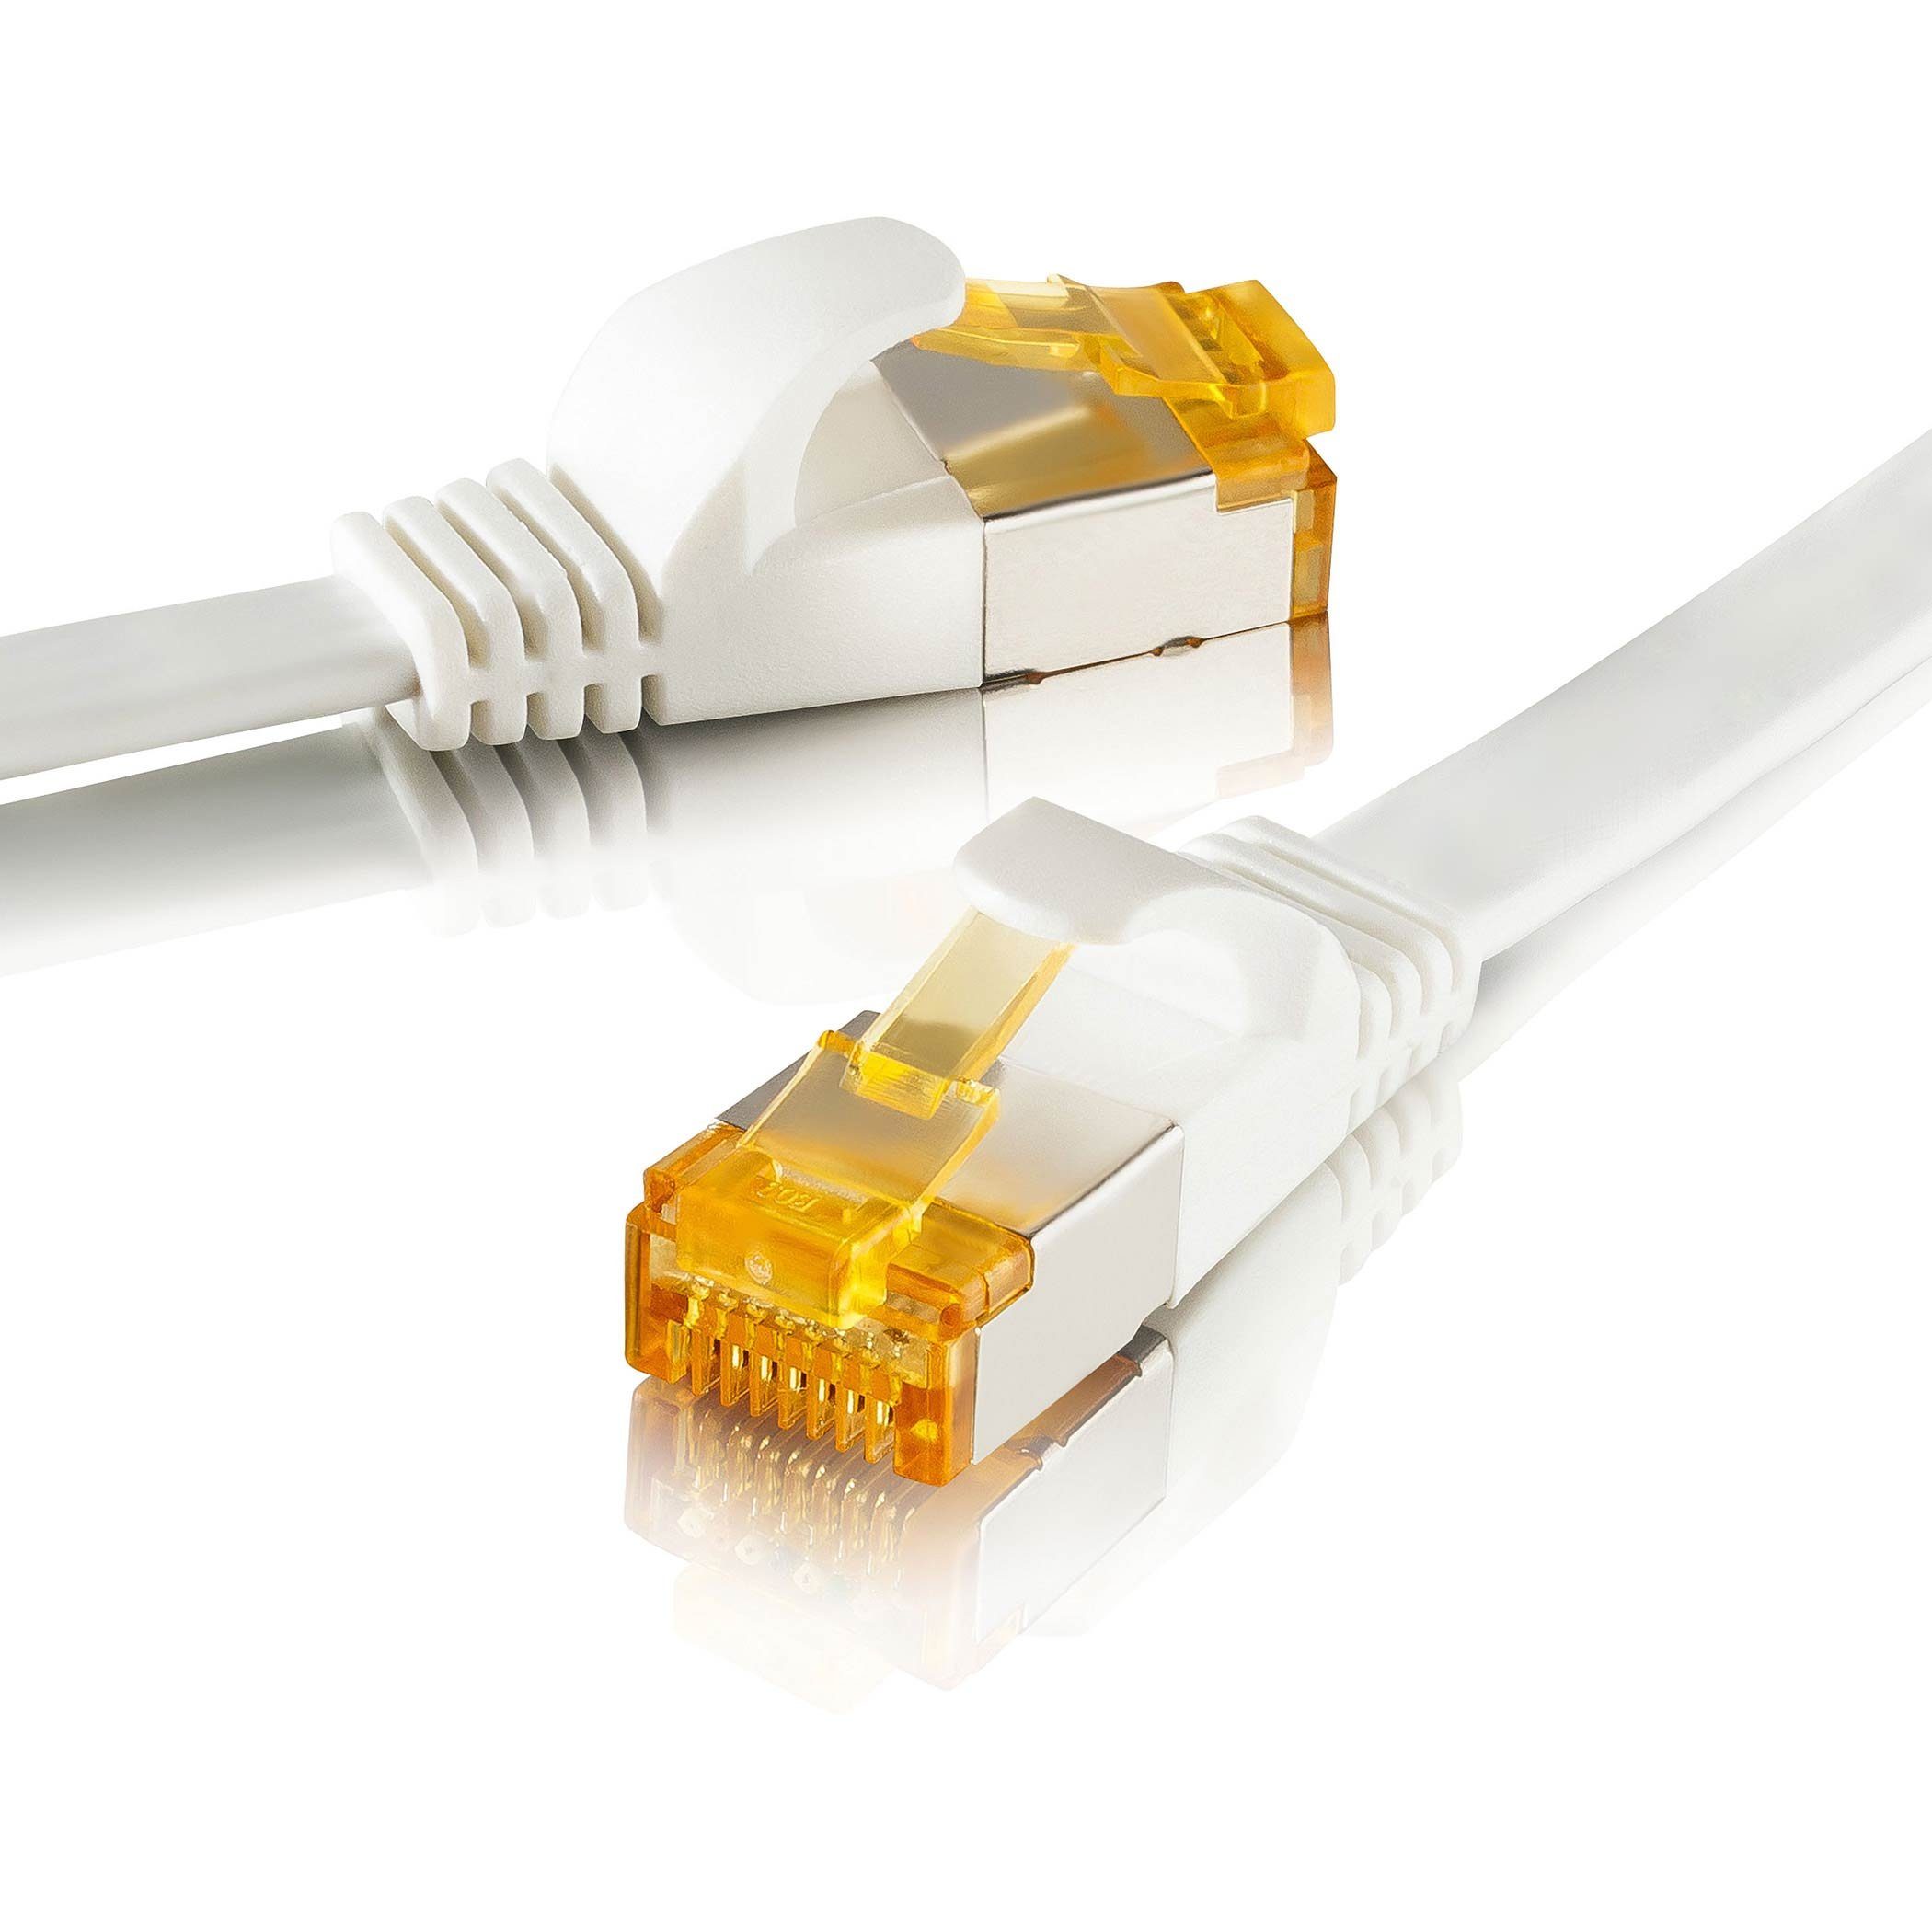 SEBSON »LAN Kabel 15m CAT 7 flach, Netzwerkabel 10 Gbit/s, RJ45 Stecker für  Router, PC, TV, NAS, Spielekonsolen - Ethernetkabel U-FTP abgeschirmt«  Netzkabel online kaufen | OTTO